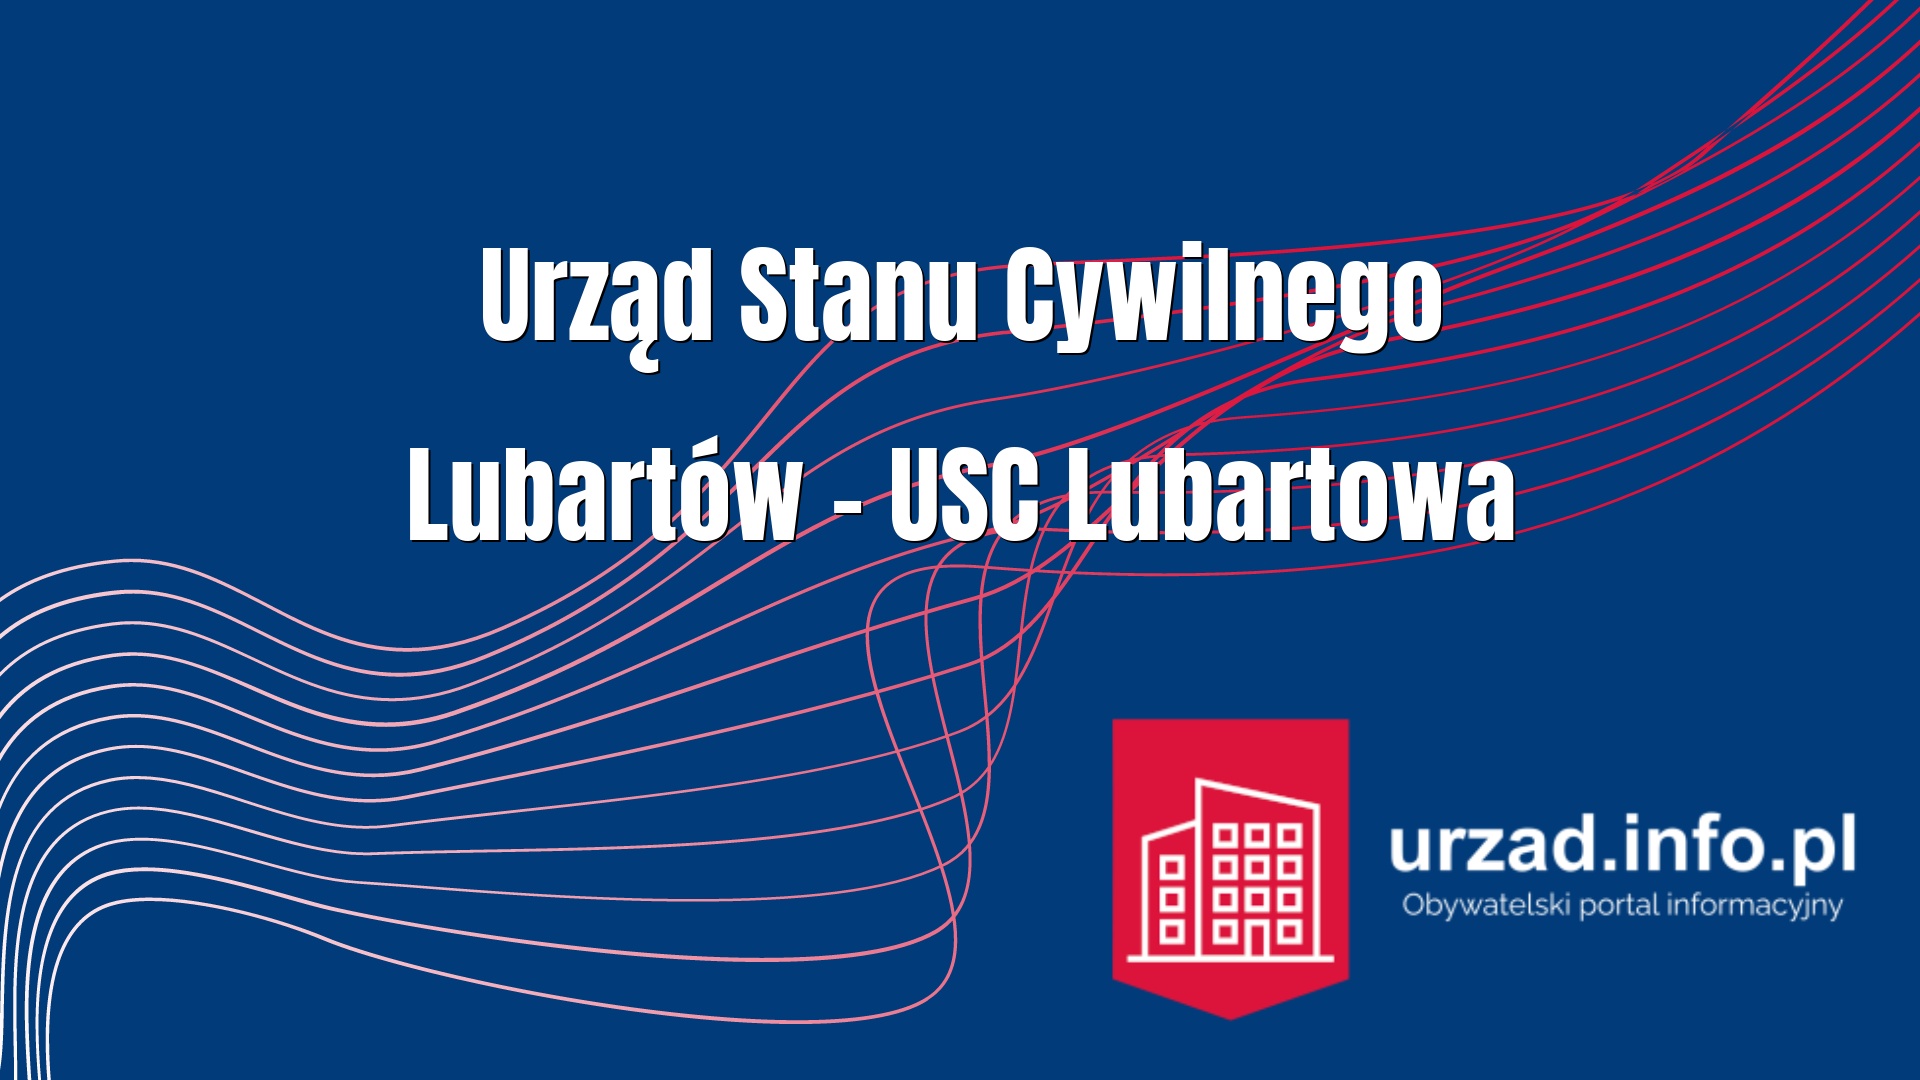 Urząd Stanu Cywilnego Lubartów – USC Lubartowa